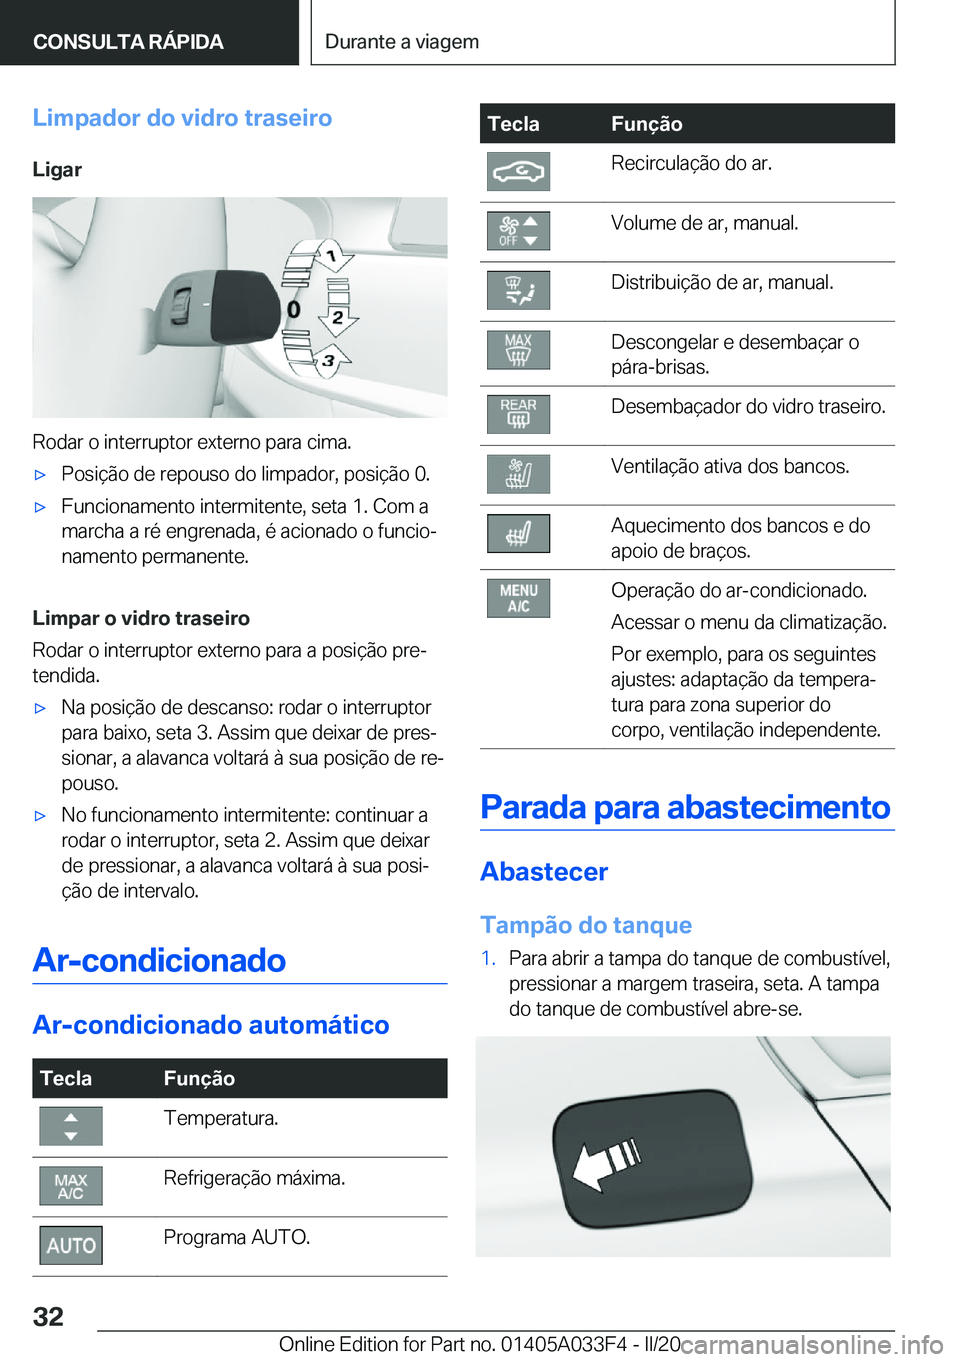 BMW X5 M 2020  Manual do condutor (in Portuguese) �L�i�m�p�a�d�o�r��d�o��v�i�d�r�o��t�r�a�s�e�i�r�o�L�i�g�a�r
�R�o�d�a�r��o��i�n�t�e�r�r�u�p�t�o�r��e�x�t�e�r�n�o��p�a�r�a��c�i�m�a�.
'x�P�o�s�i�